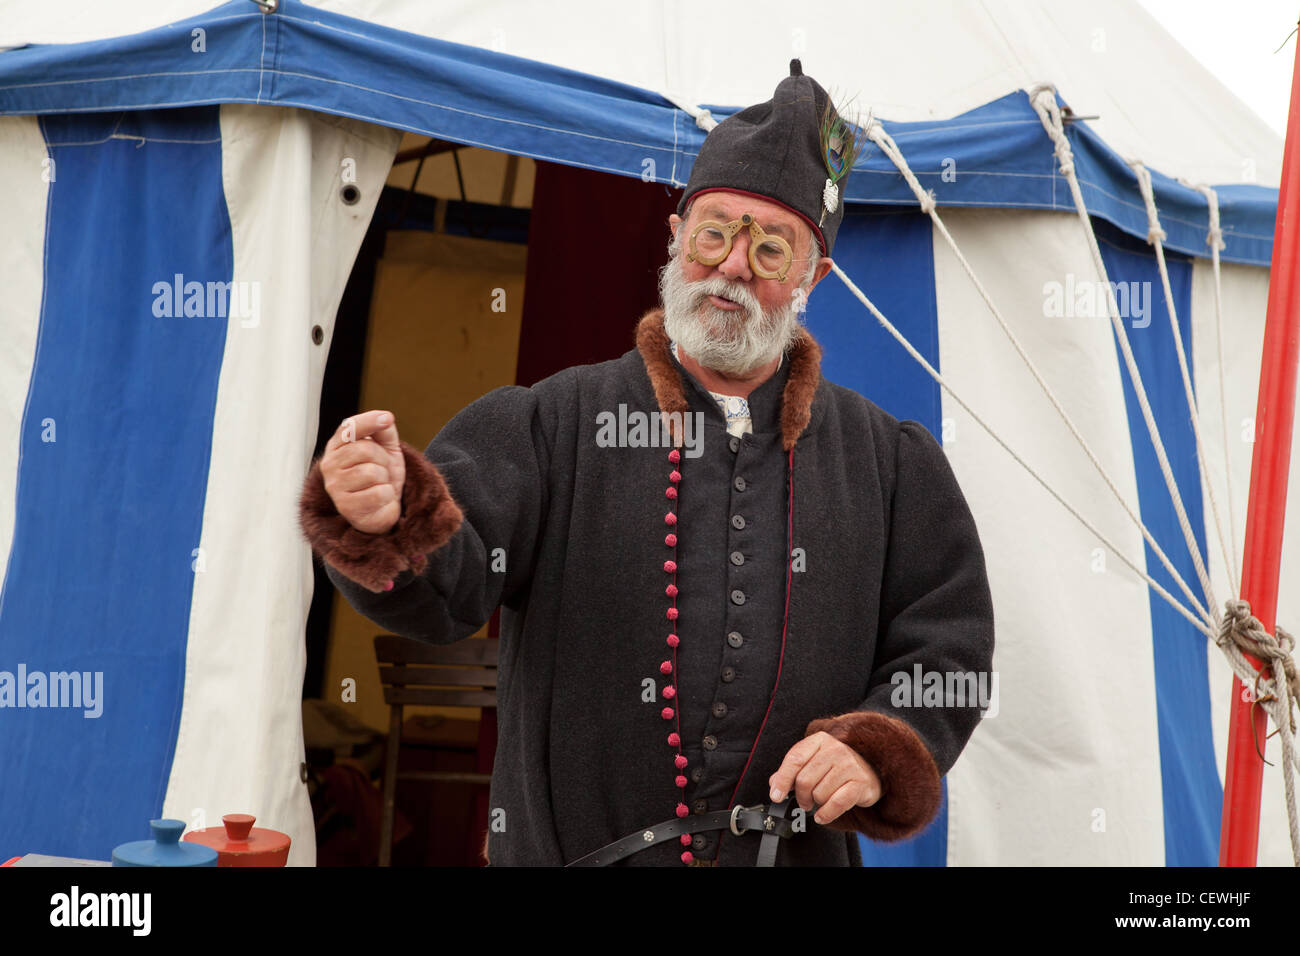 Mann verkleidet als einem mittelalterlichen Alchemisten, England. Stockfoto